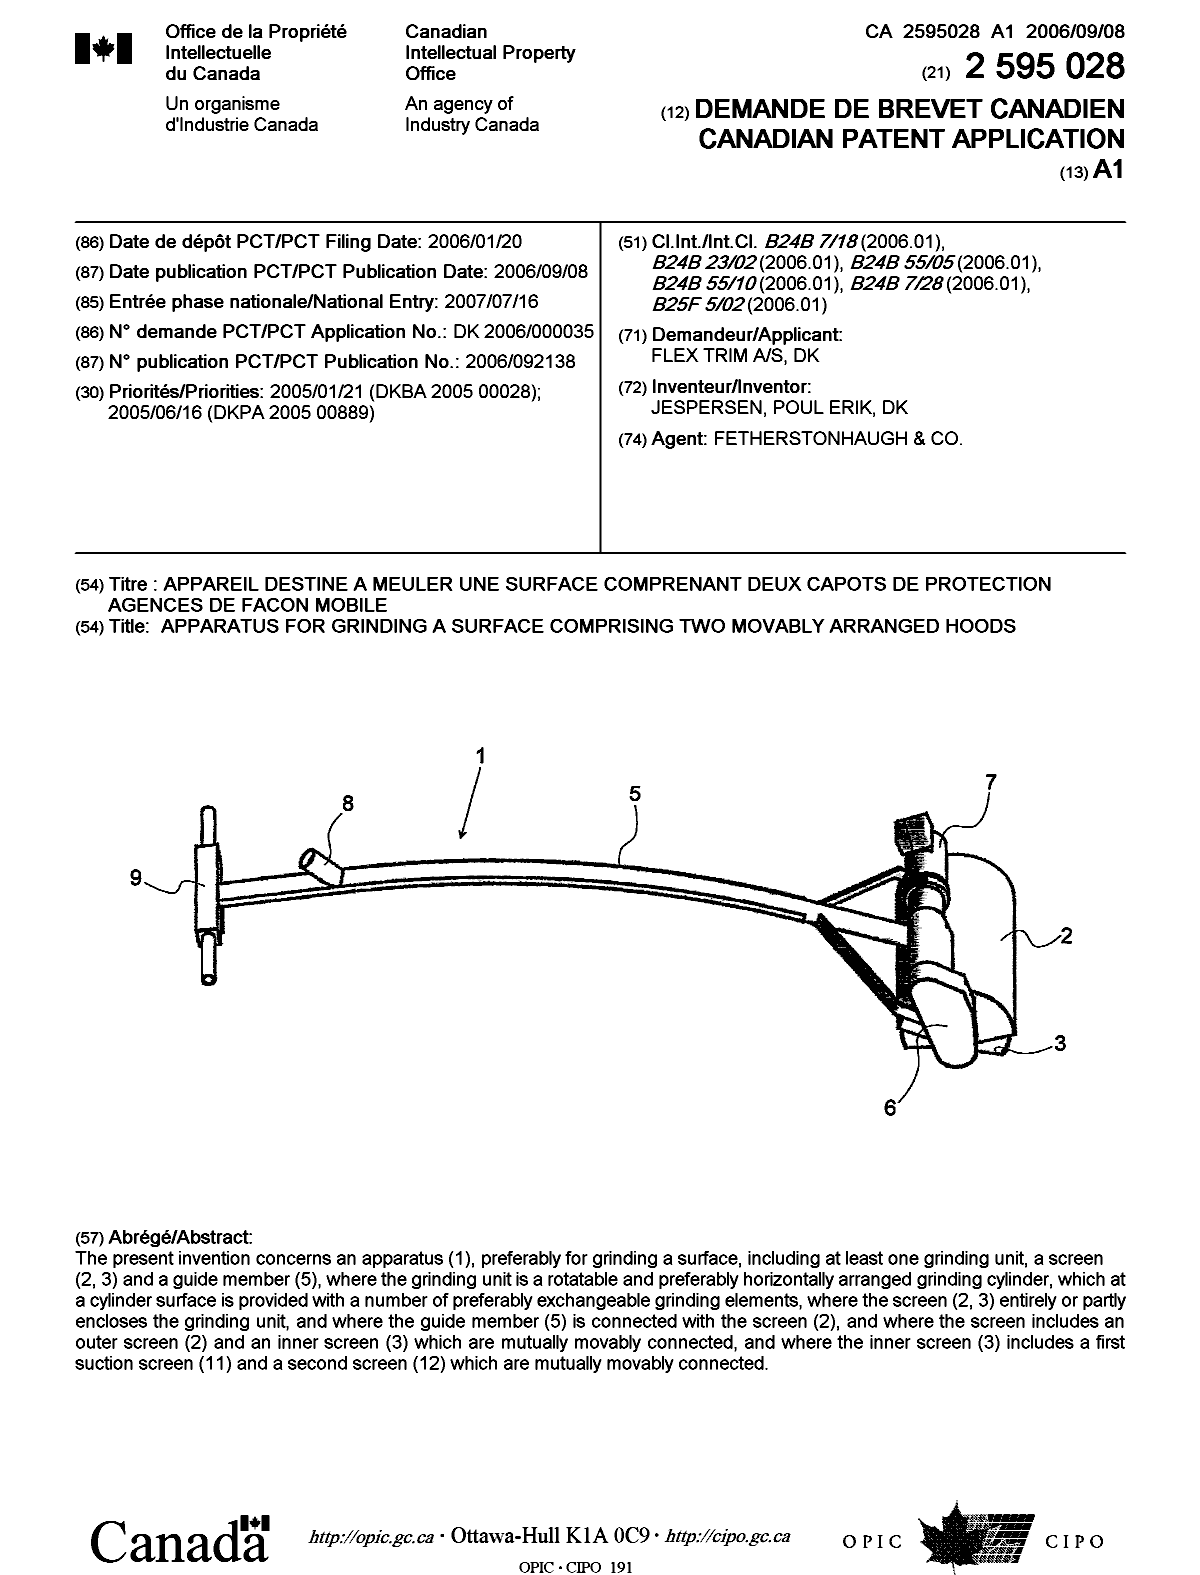 Document de brevet canadien 2595028. Page couverture 20071003. Image 1 de 1